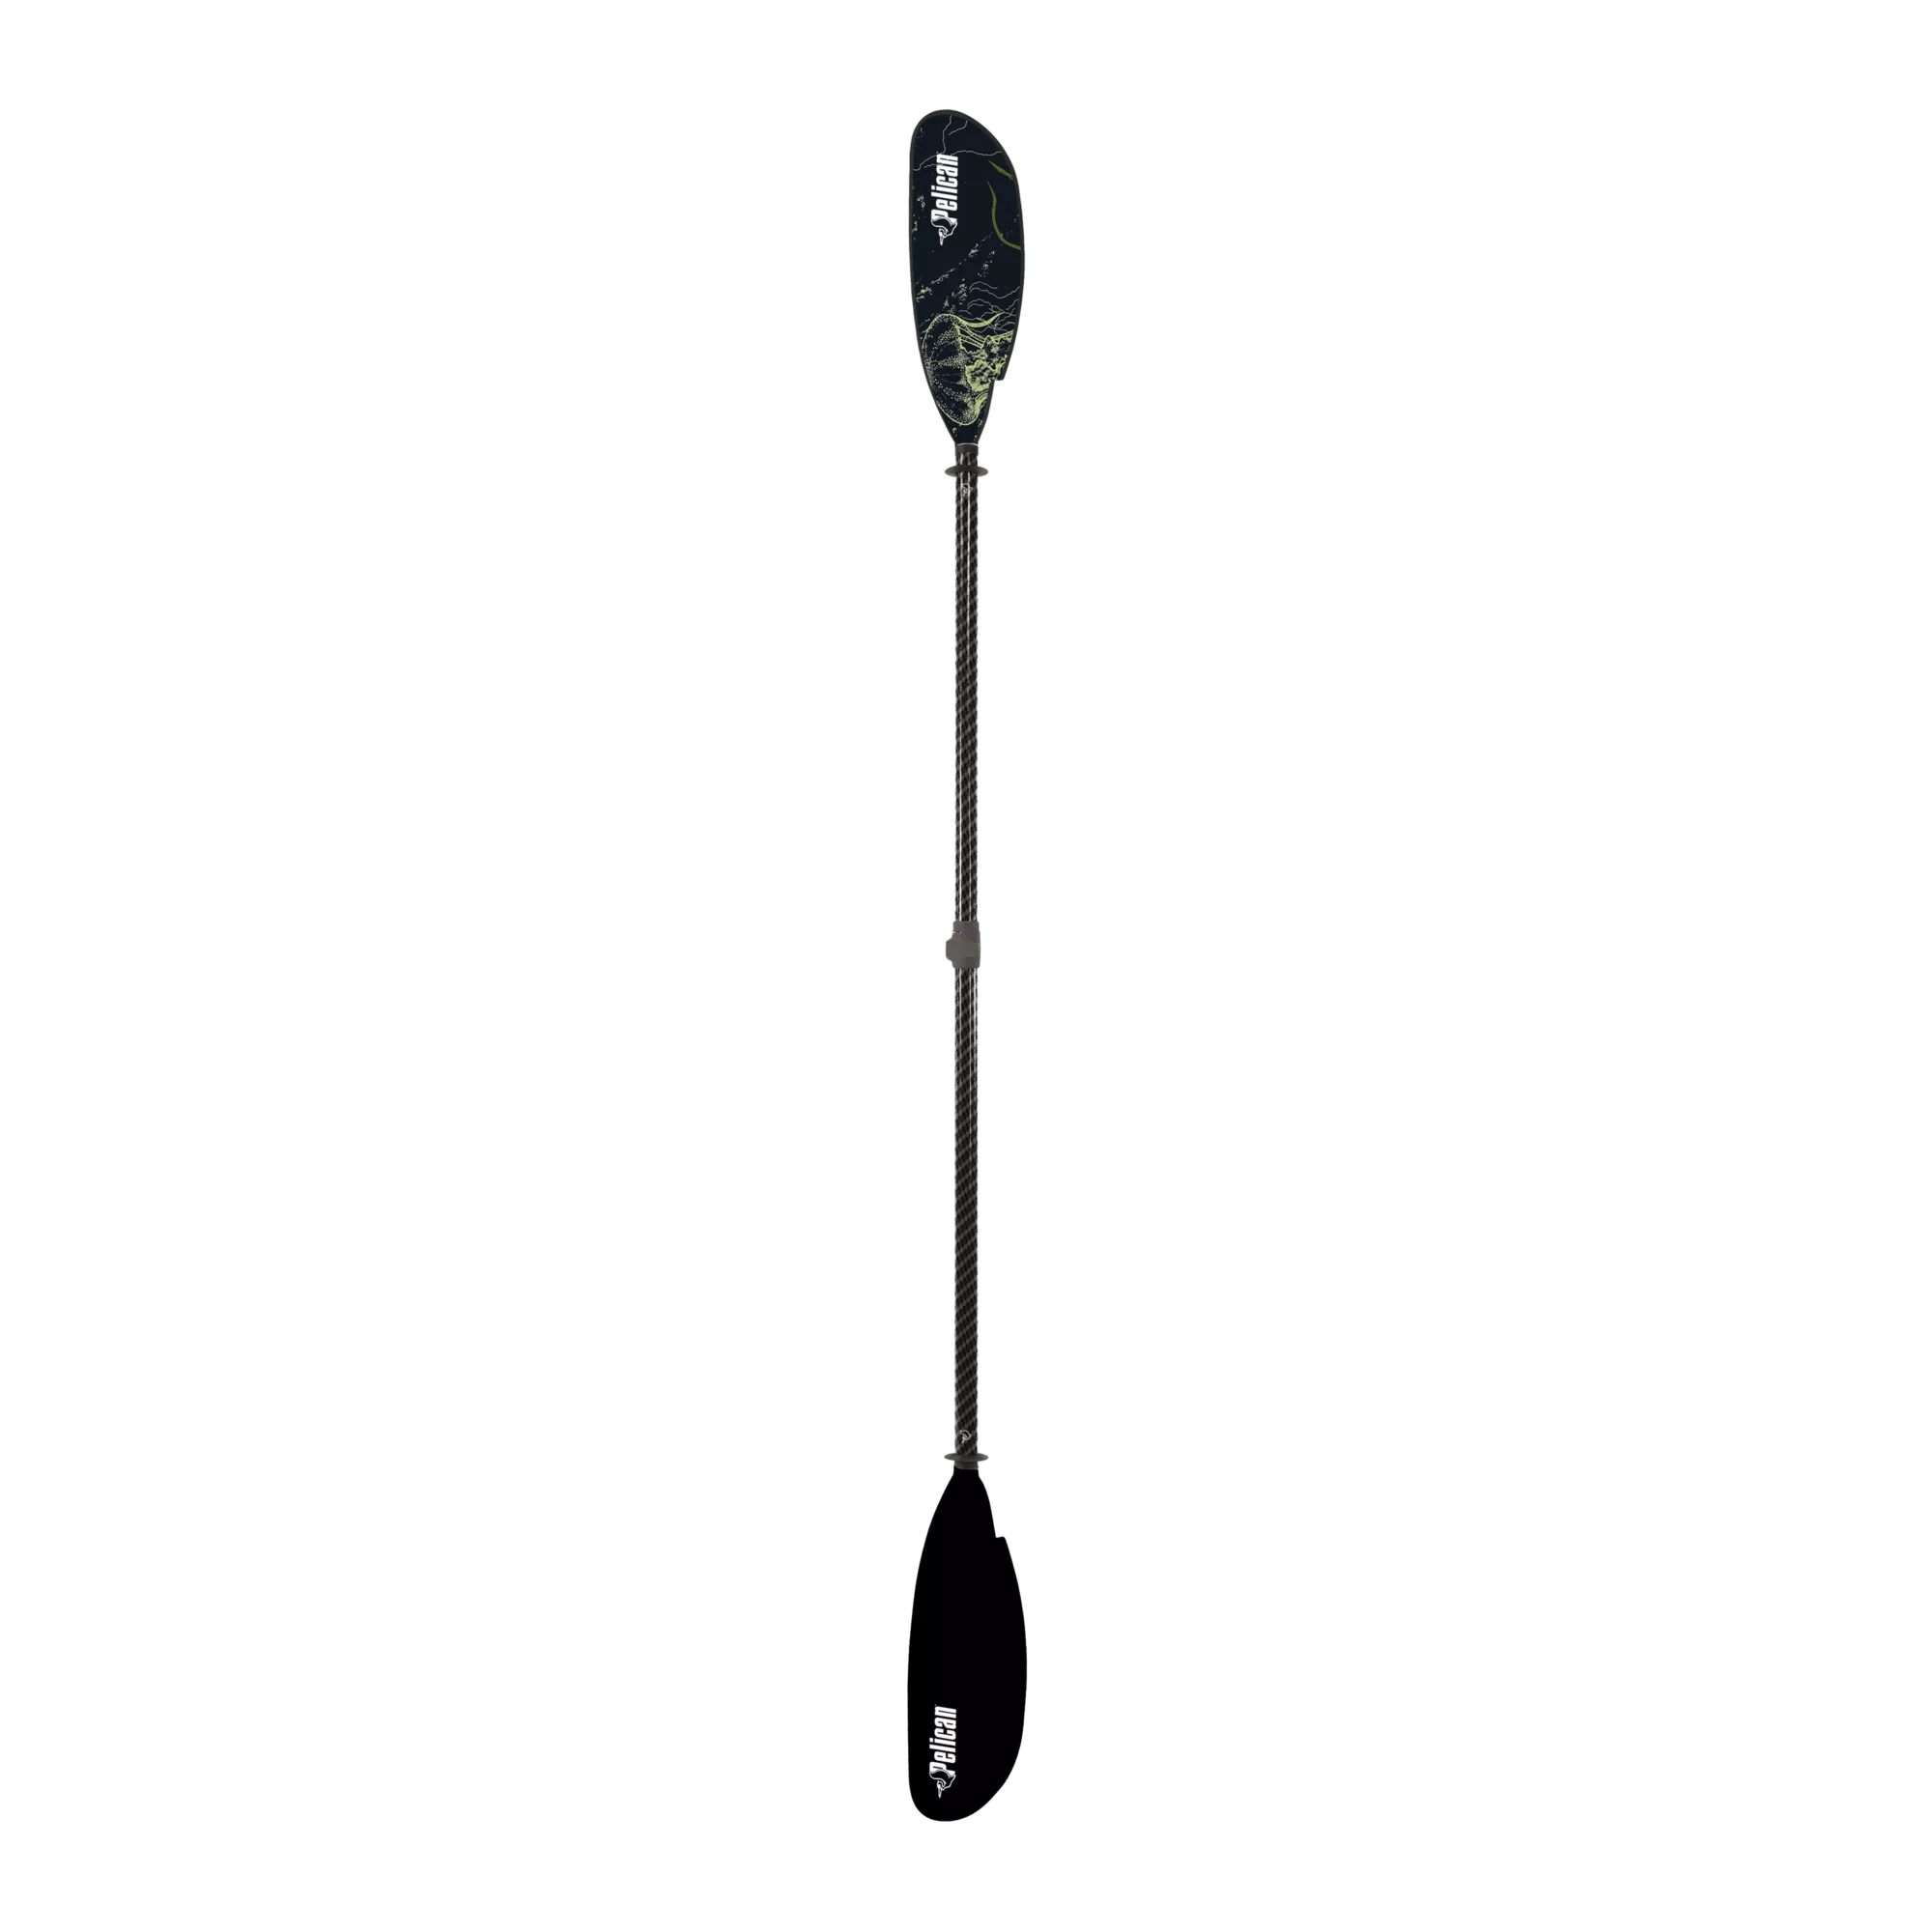 PELICAN - Pagaie de kayak réglable Symbiosa de 240 à 250 cm (94,5 à 98,4 po) - Black - PS1971-00 - TOP